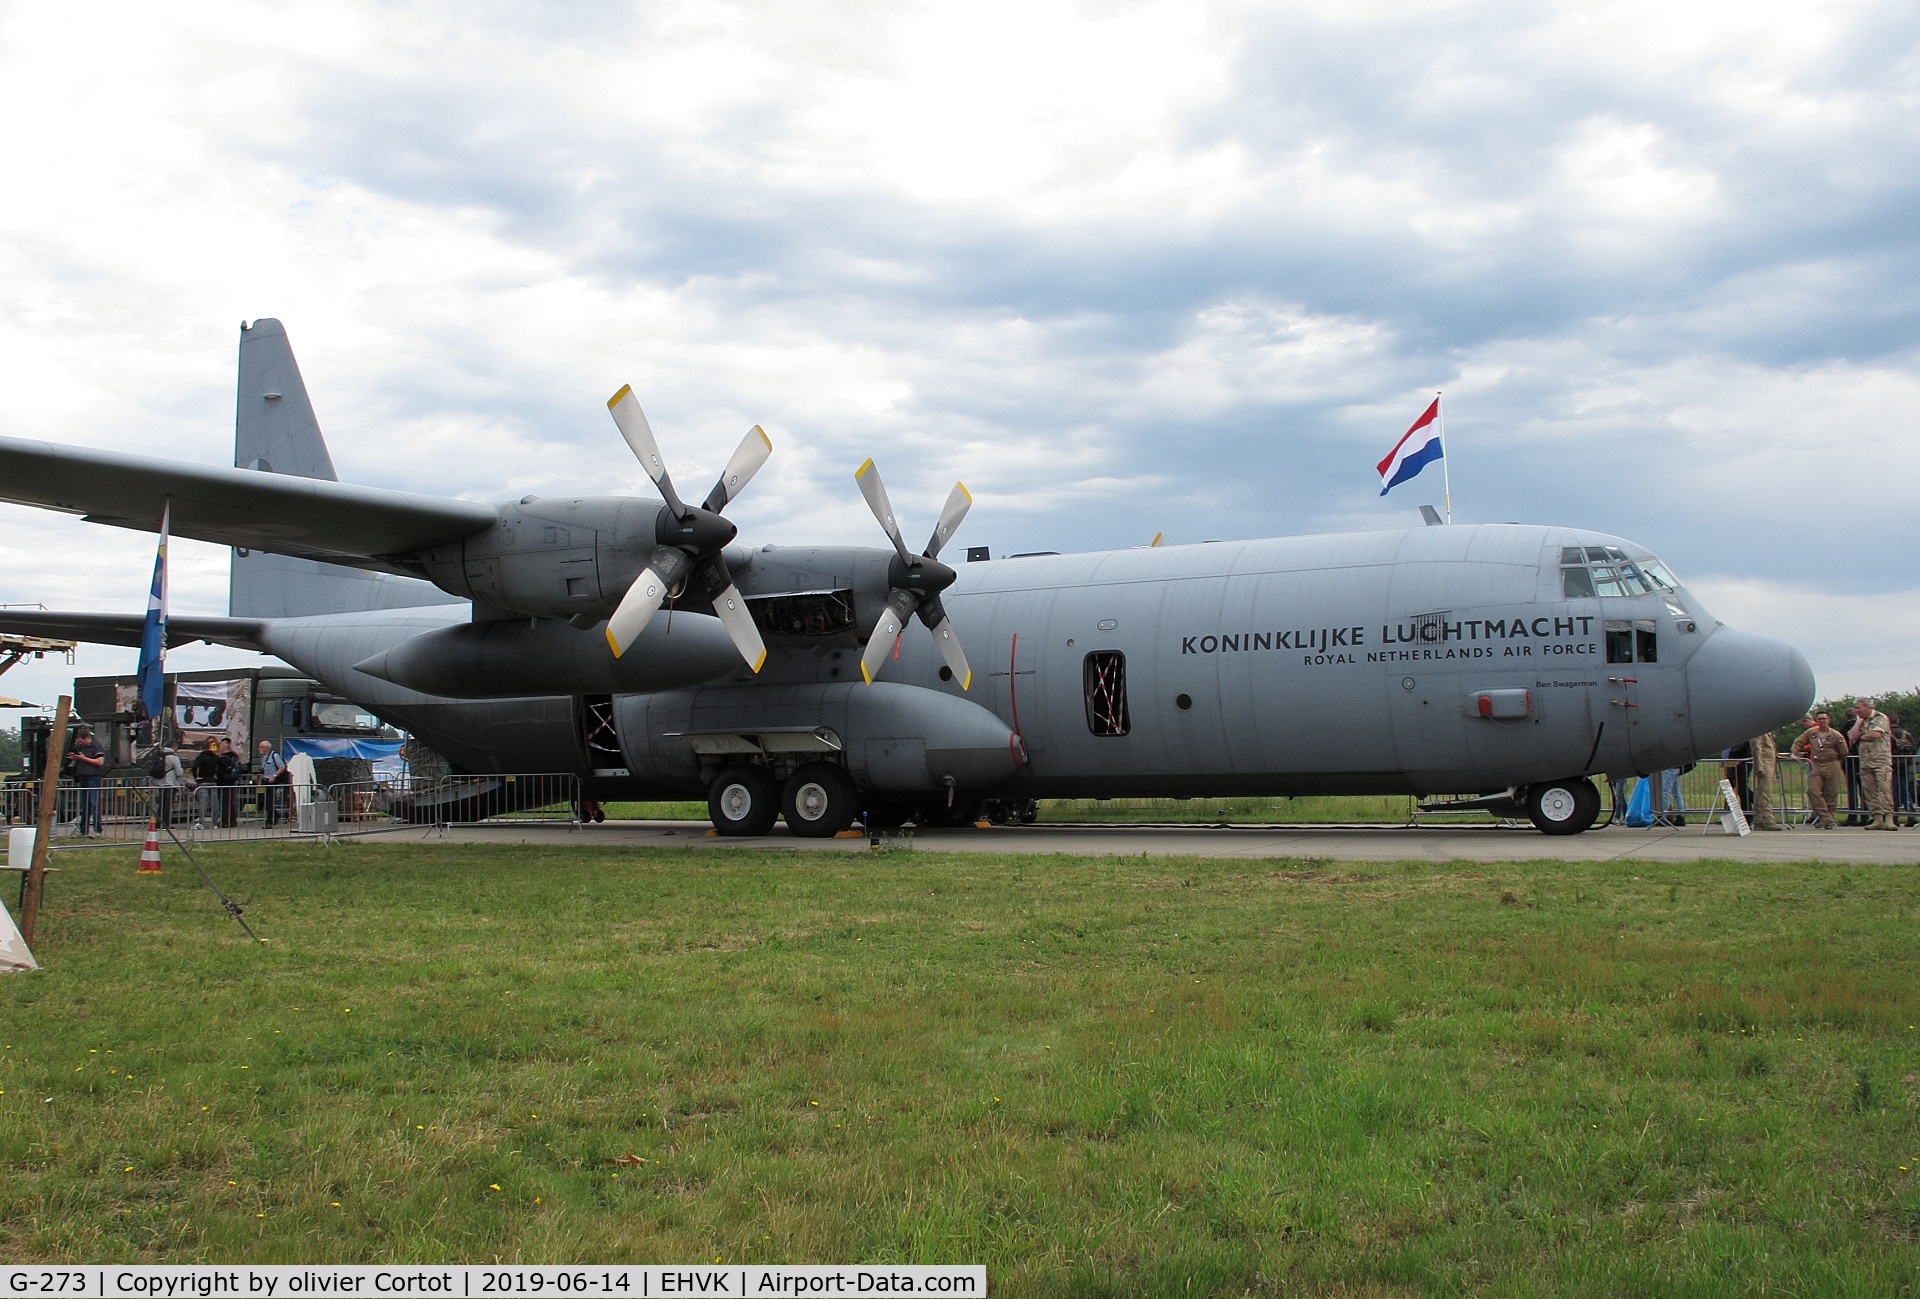 G-273, 1993 Lockheed C-130H-30 Hercules C/N 382-5273, 2019 airshow